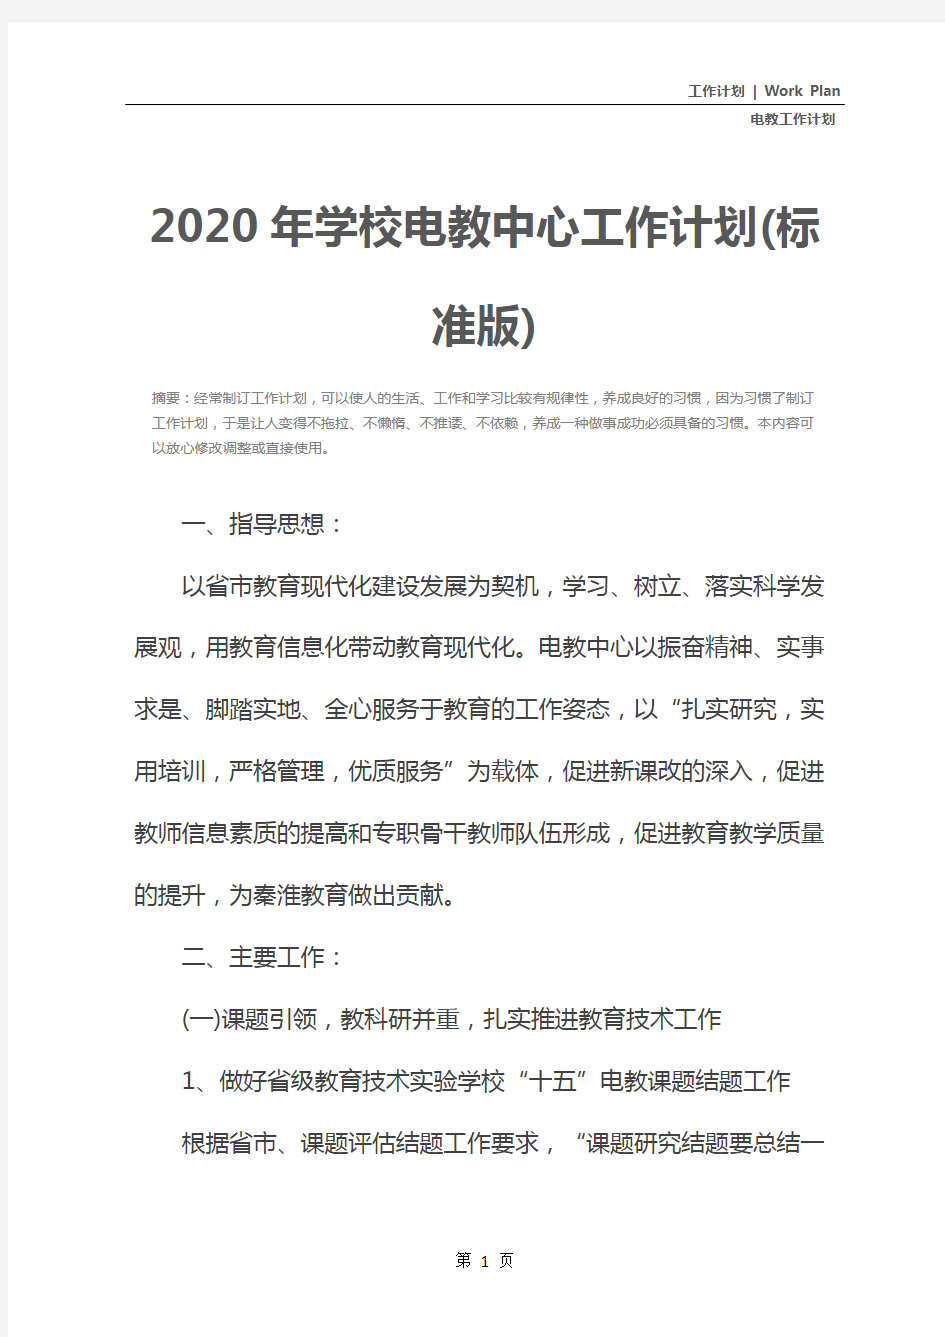 2020年学校电教中心工作计划(标准版)